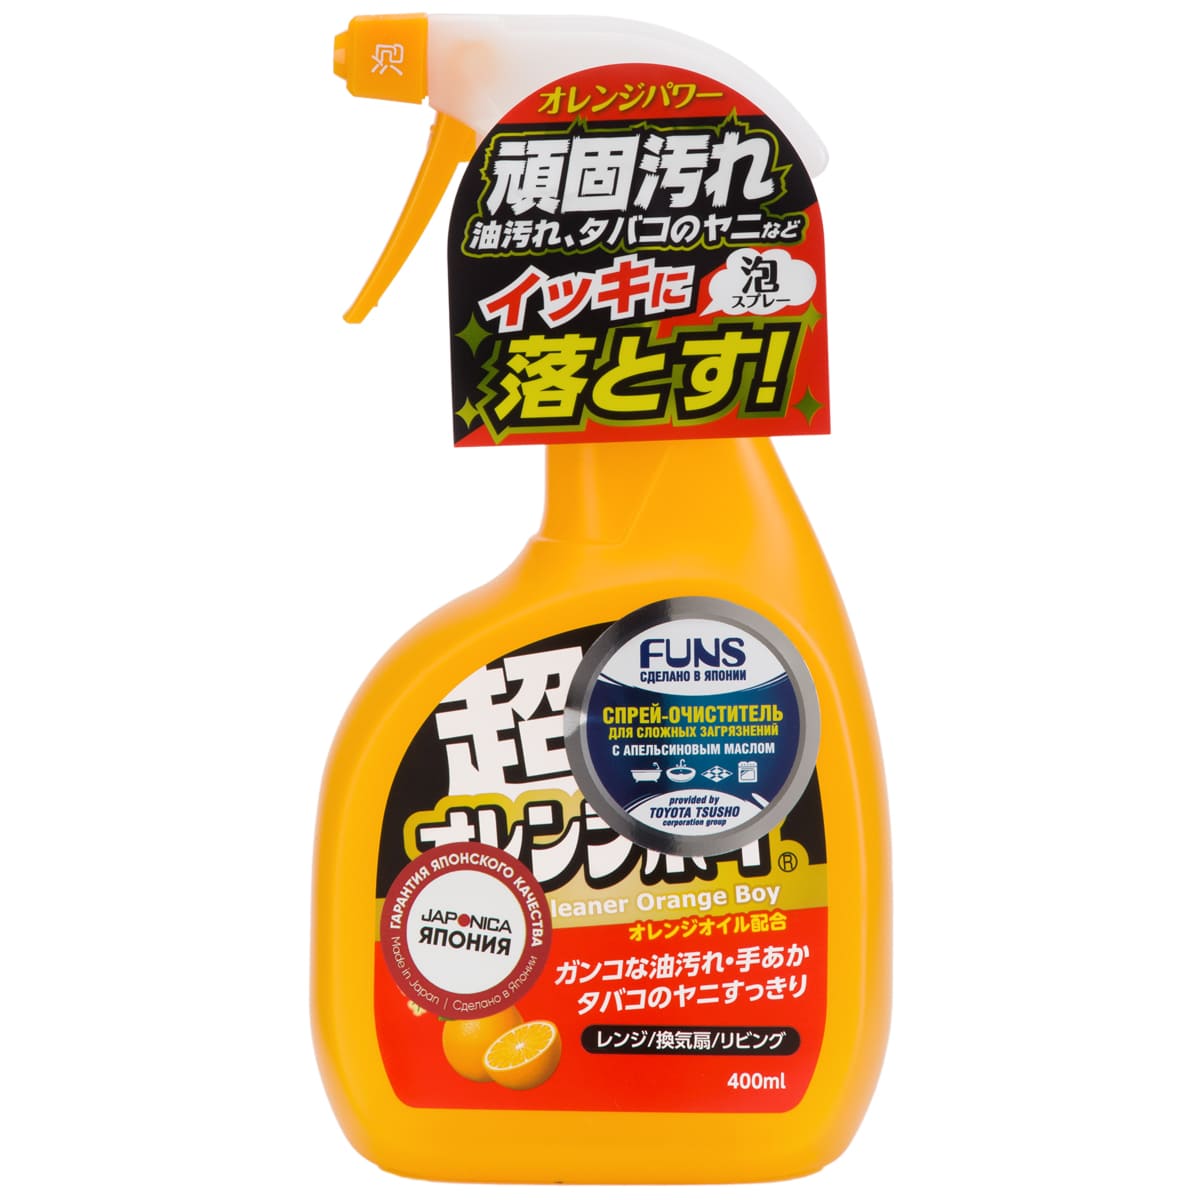 Funs Спрей-очиститель для дома сверхмощный с ароматом апельсина Orange Boy, 400 мл (Funs, Для уборки) цена и фото